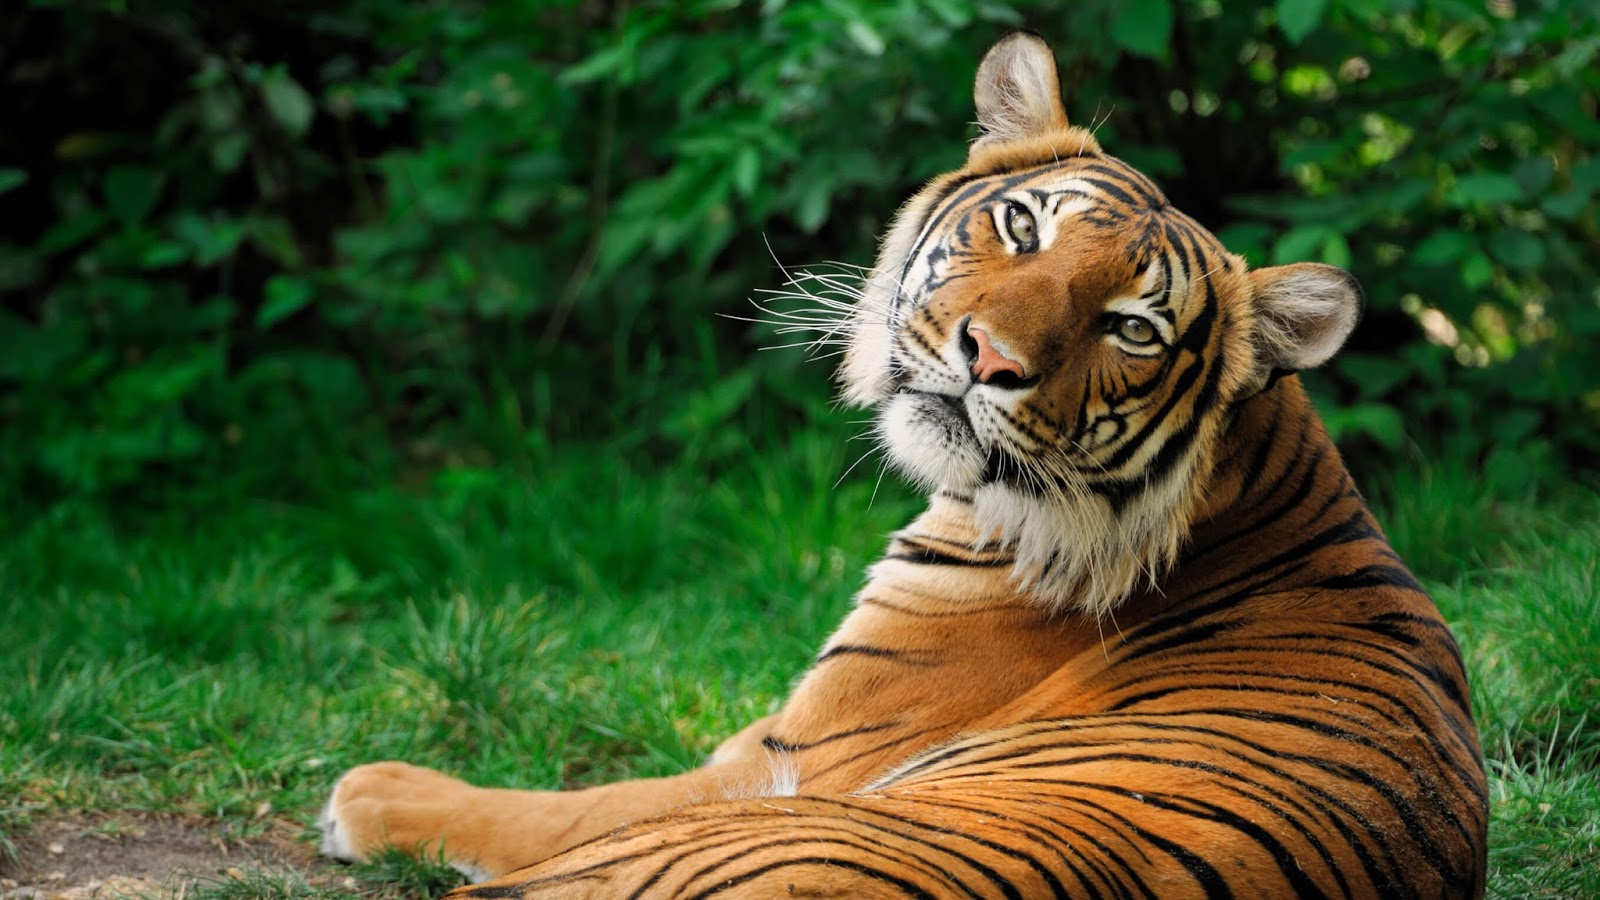 Tiger Wallpaper Download - Siberian Tigers - HD Wallpaper 